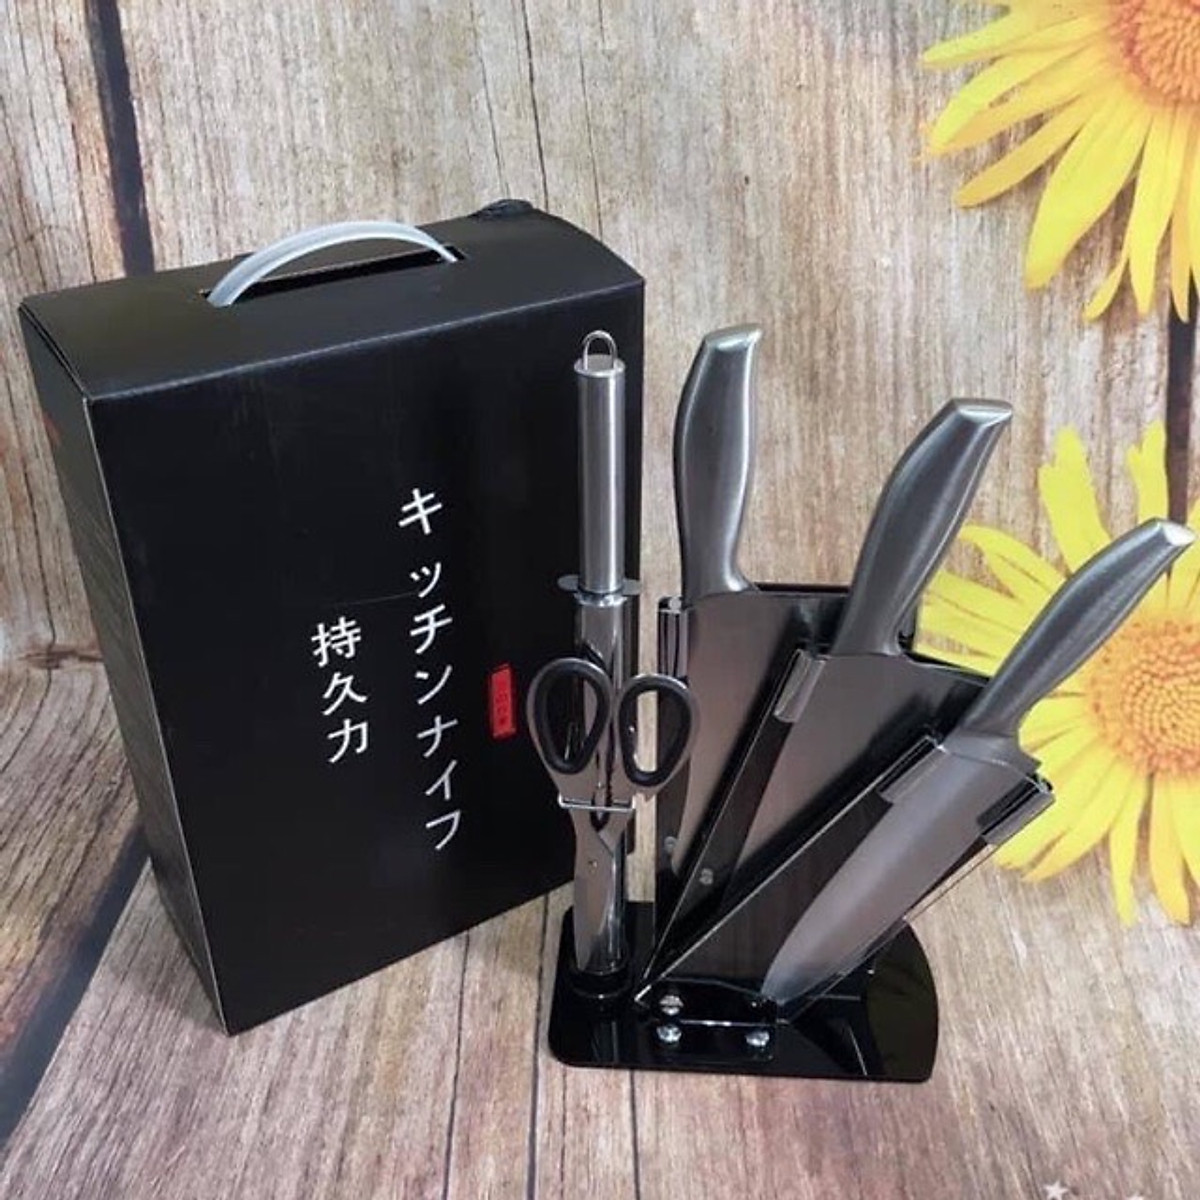 Bộ dao 6 món nhà bếp Nhật Bản siêu sắc bén cao cấp - Logo trên thân dao ngẫu nhiên - Chính hãng